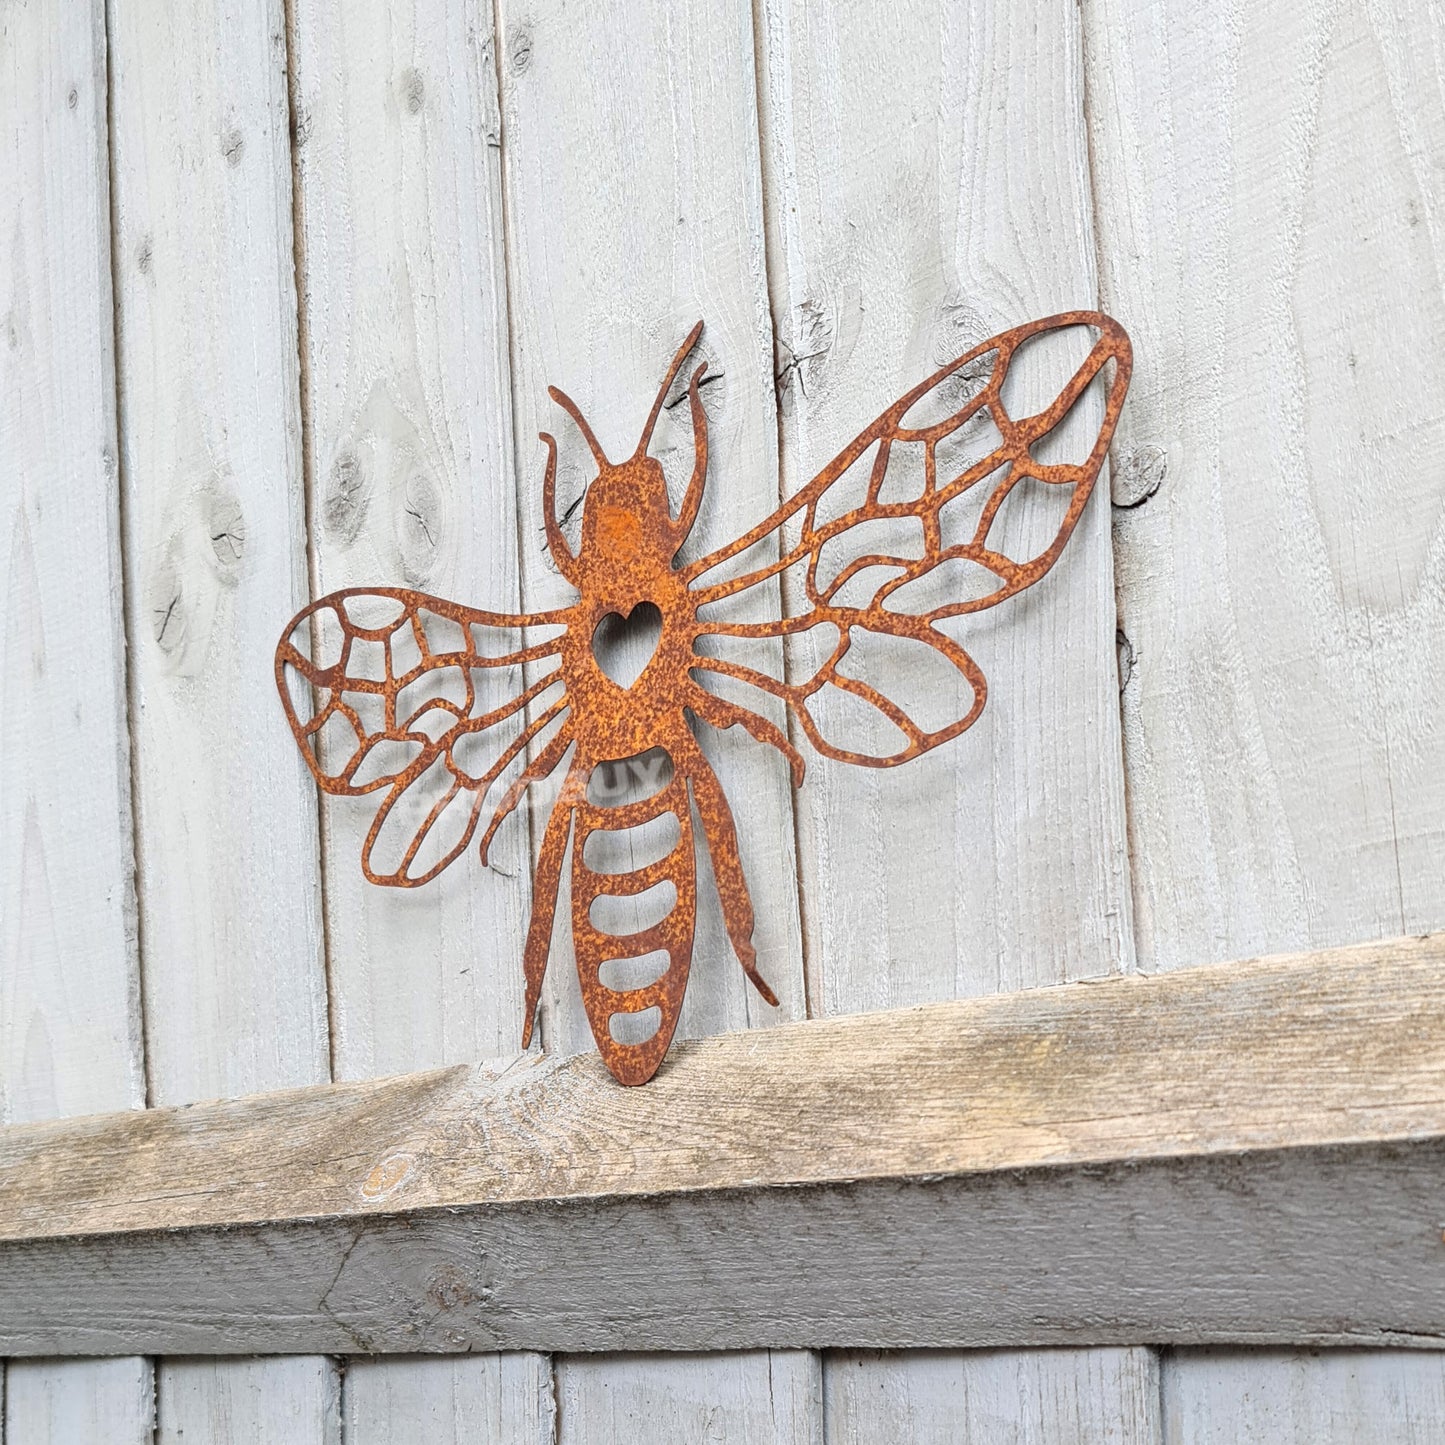 Rusty Honey Bee 38cm Metal Wall Art Hanging